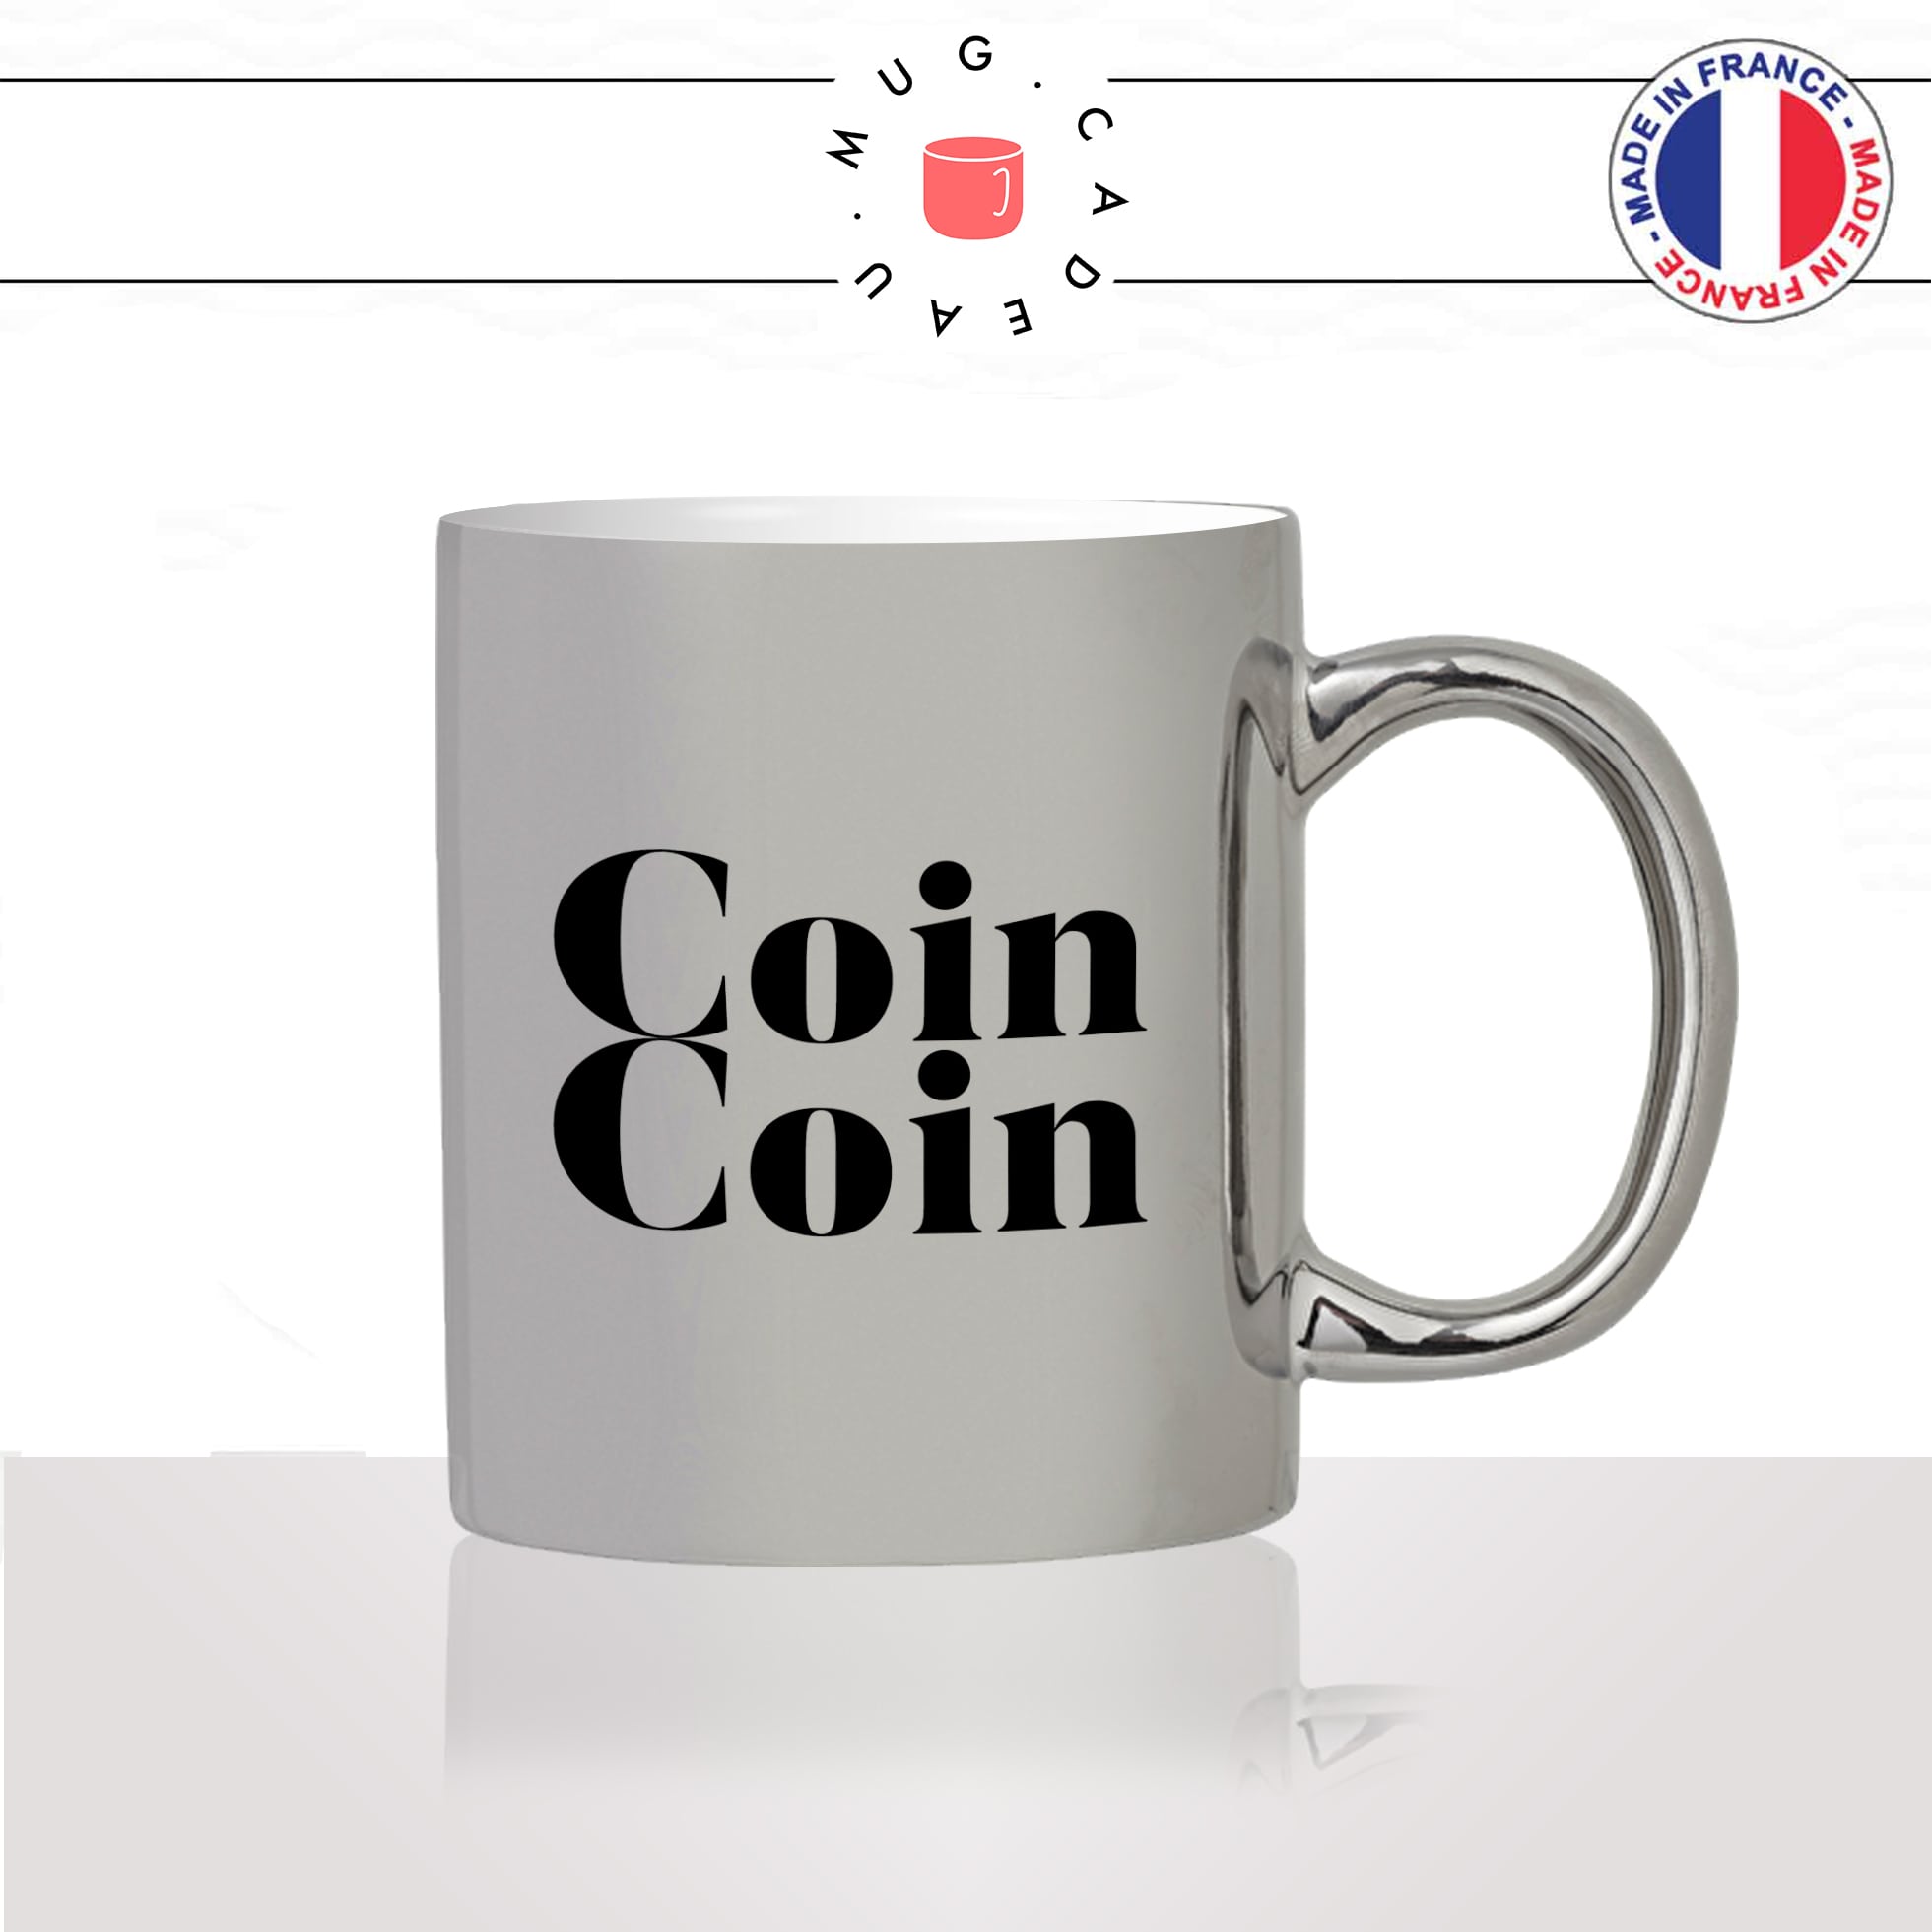 mug-tasse-silver-argenté-canard-calligraphie-lettrine-mot-coin-coin-homme-couple-décoration-ami-idée-cadeau-original-personnalisé-café-thé2-min